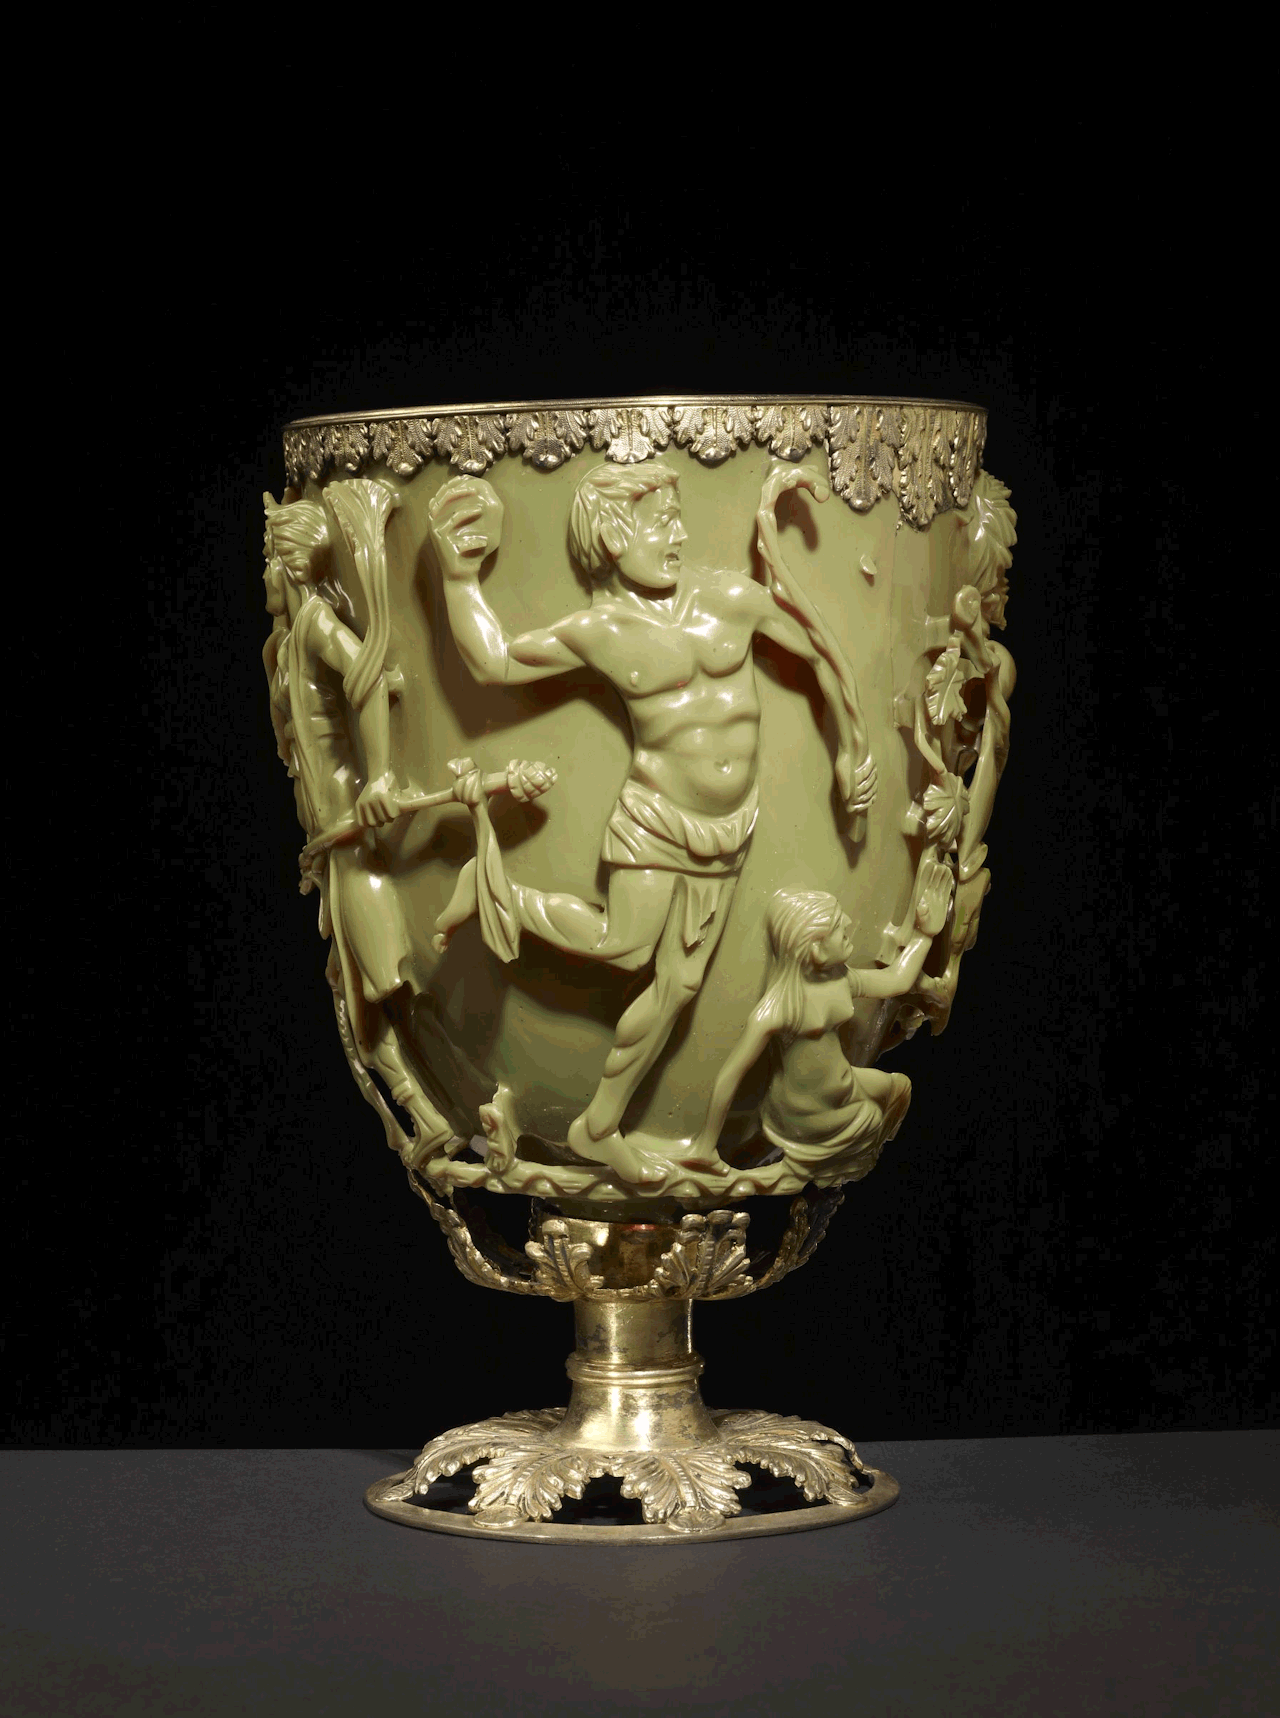 Roman Lycurgus Cup - это римская чаша из зеленого нефрита, возраст которой 1,600 лет. Когда вы помещаете внутрь источник света, он волшебным образом меняет цвет. Он кажется нефритово-зеленым при освещении спереди и кроваво-красным при освещении сзади или изнутри.